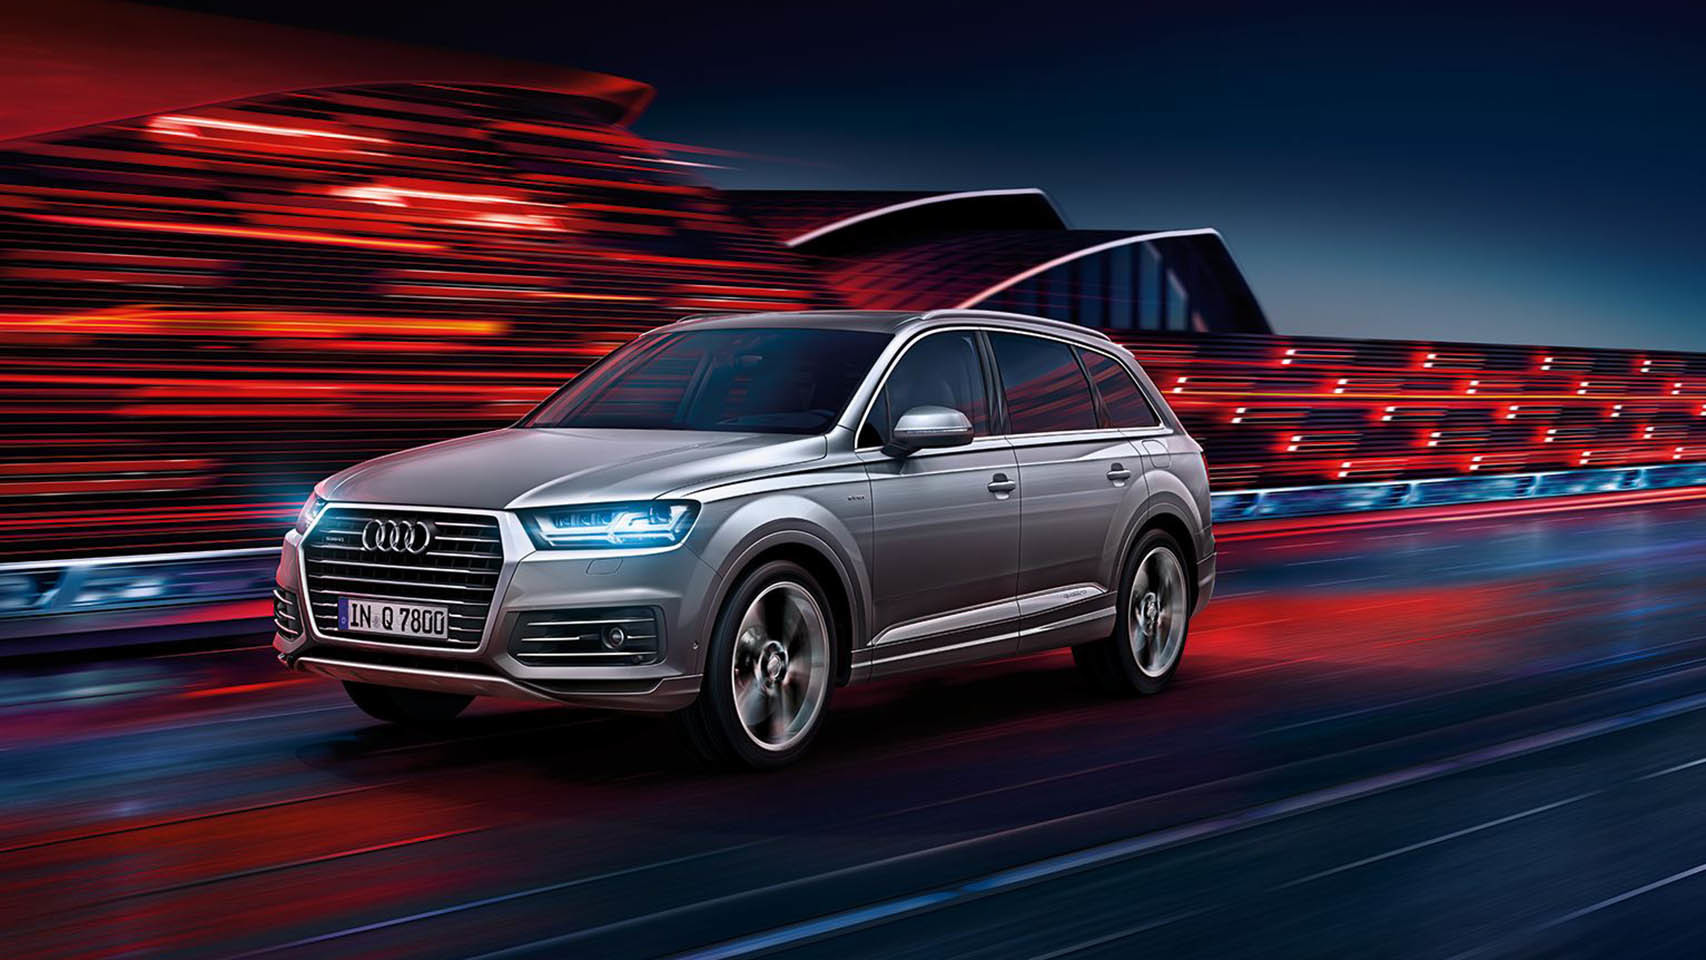 La primavera de Audi: eficiencia y deportividad